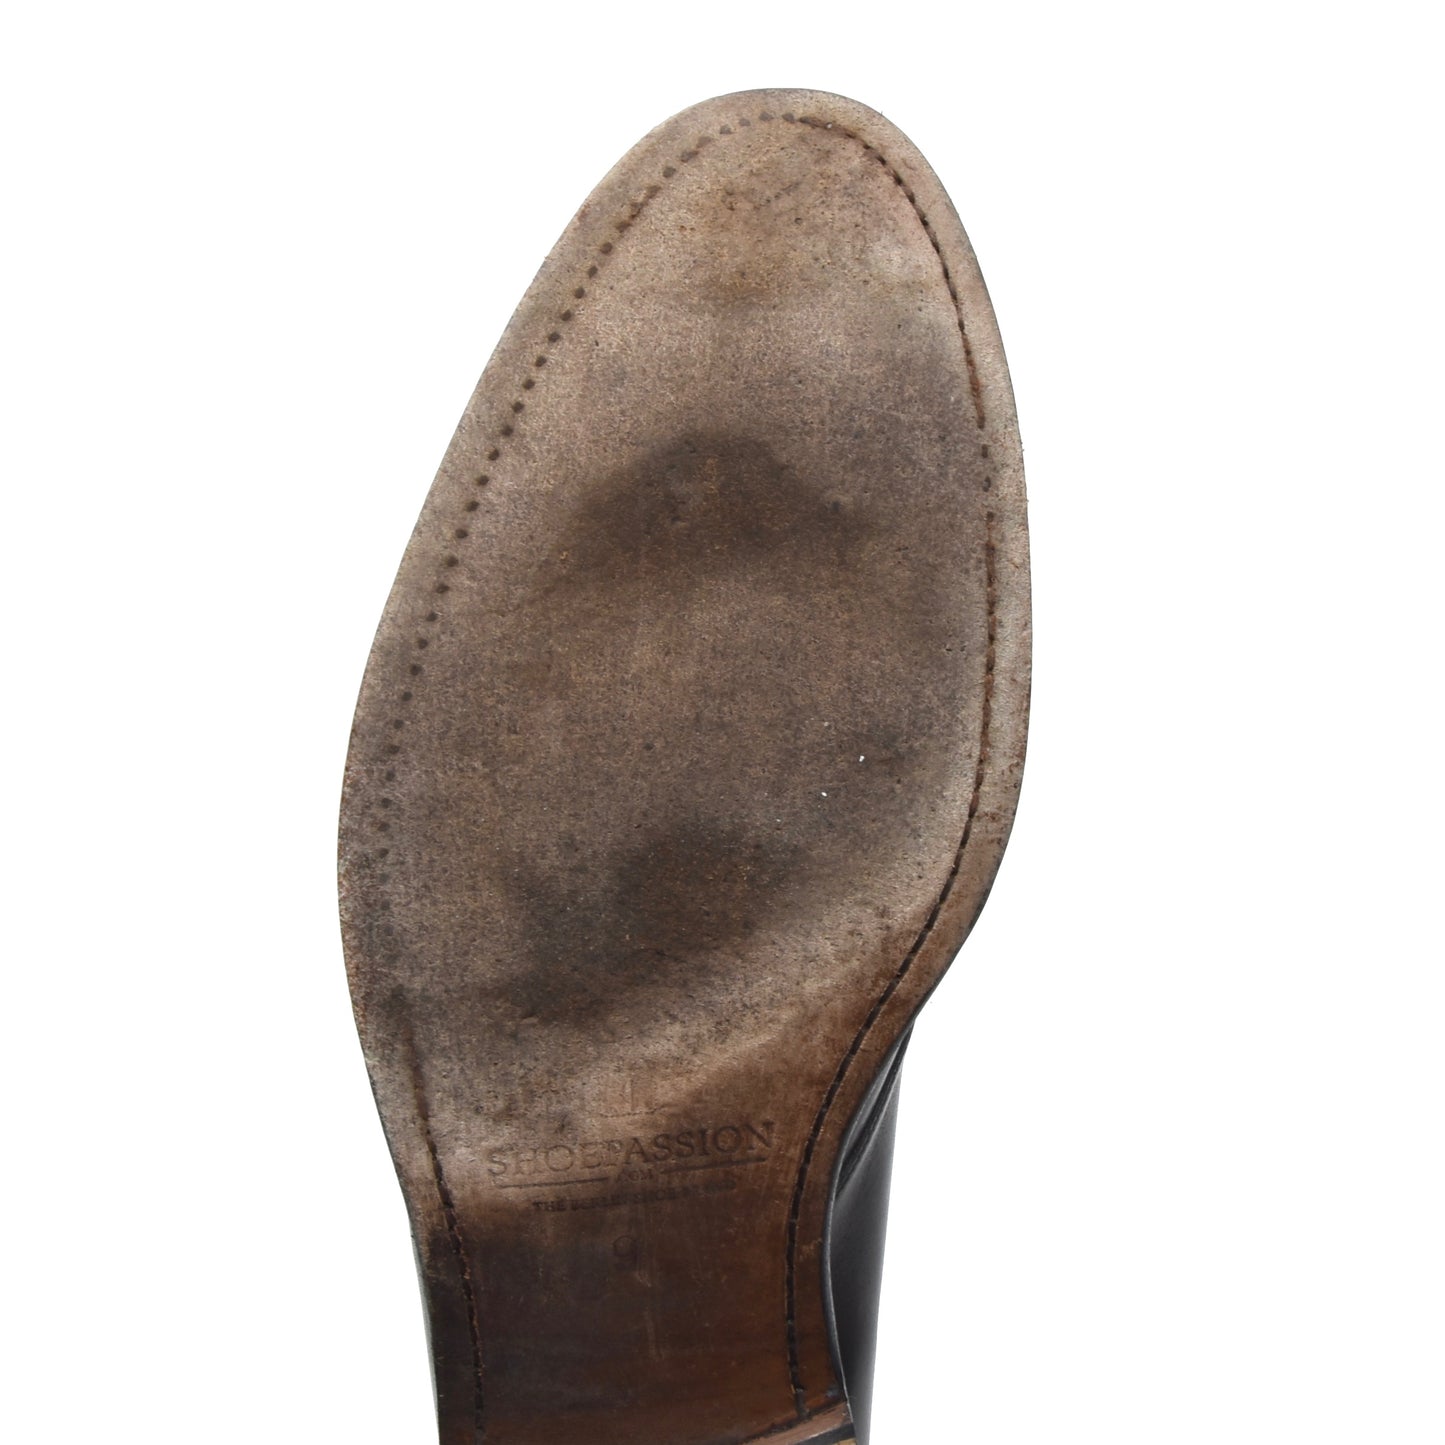 Shoepassion Lederstiefel Größe 9 - Anthrazit/Dunkelgrau